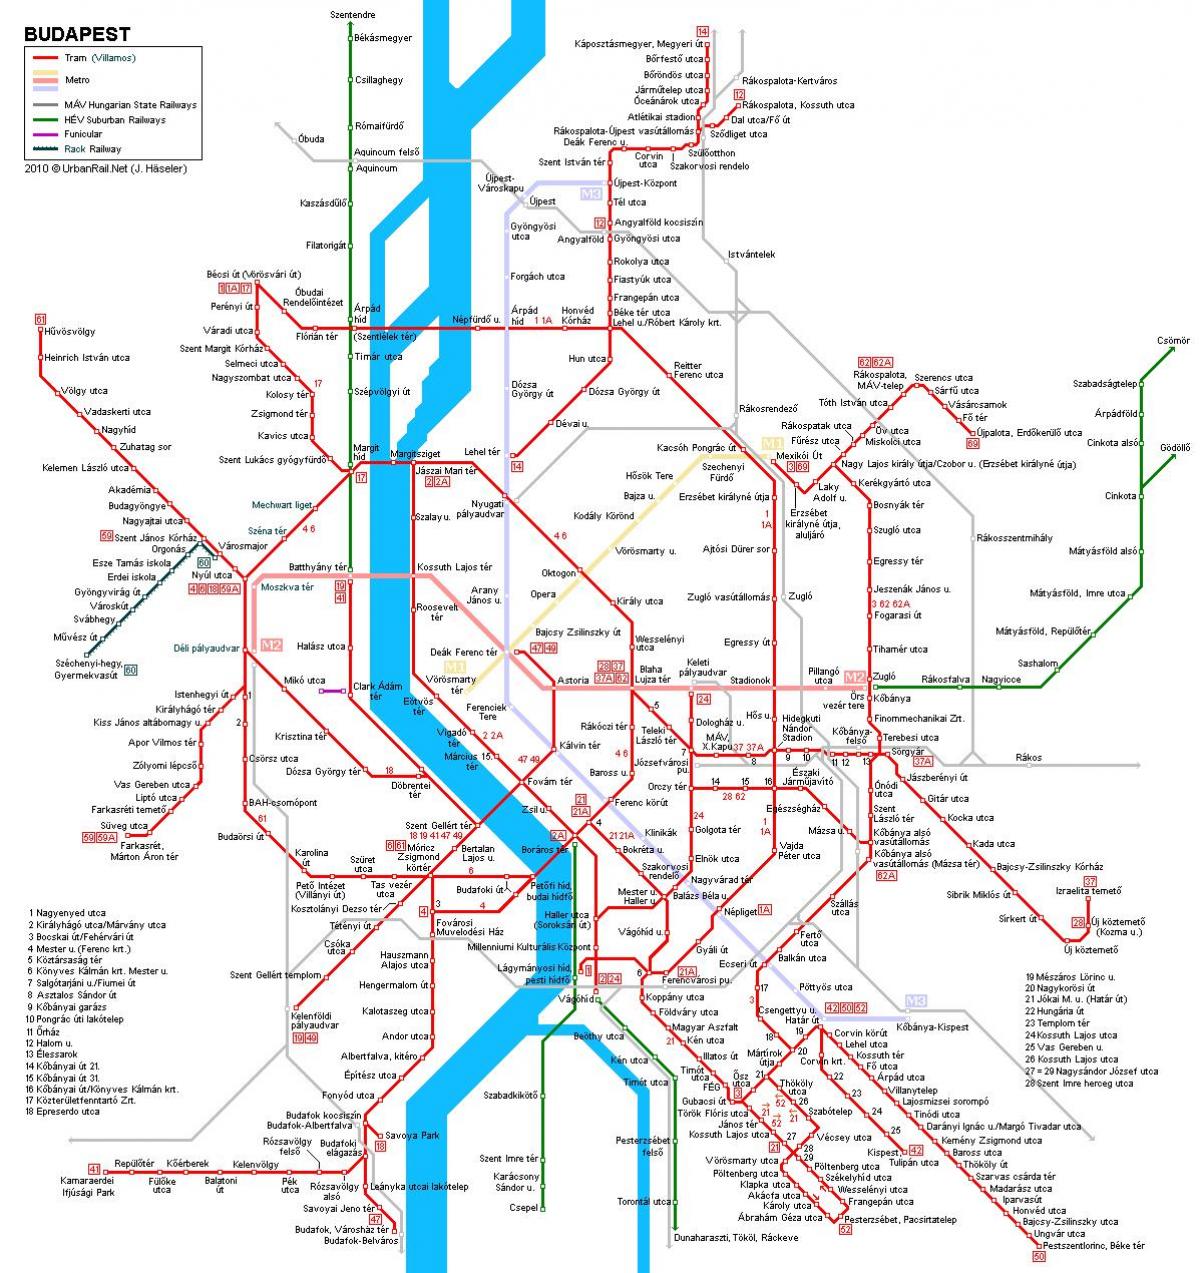 hava Budapeşt metro xəritəsi 